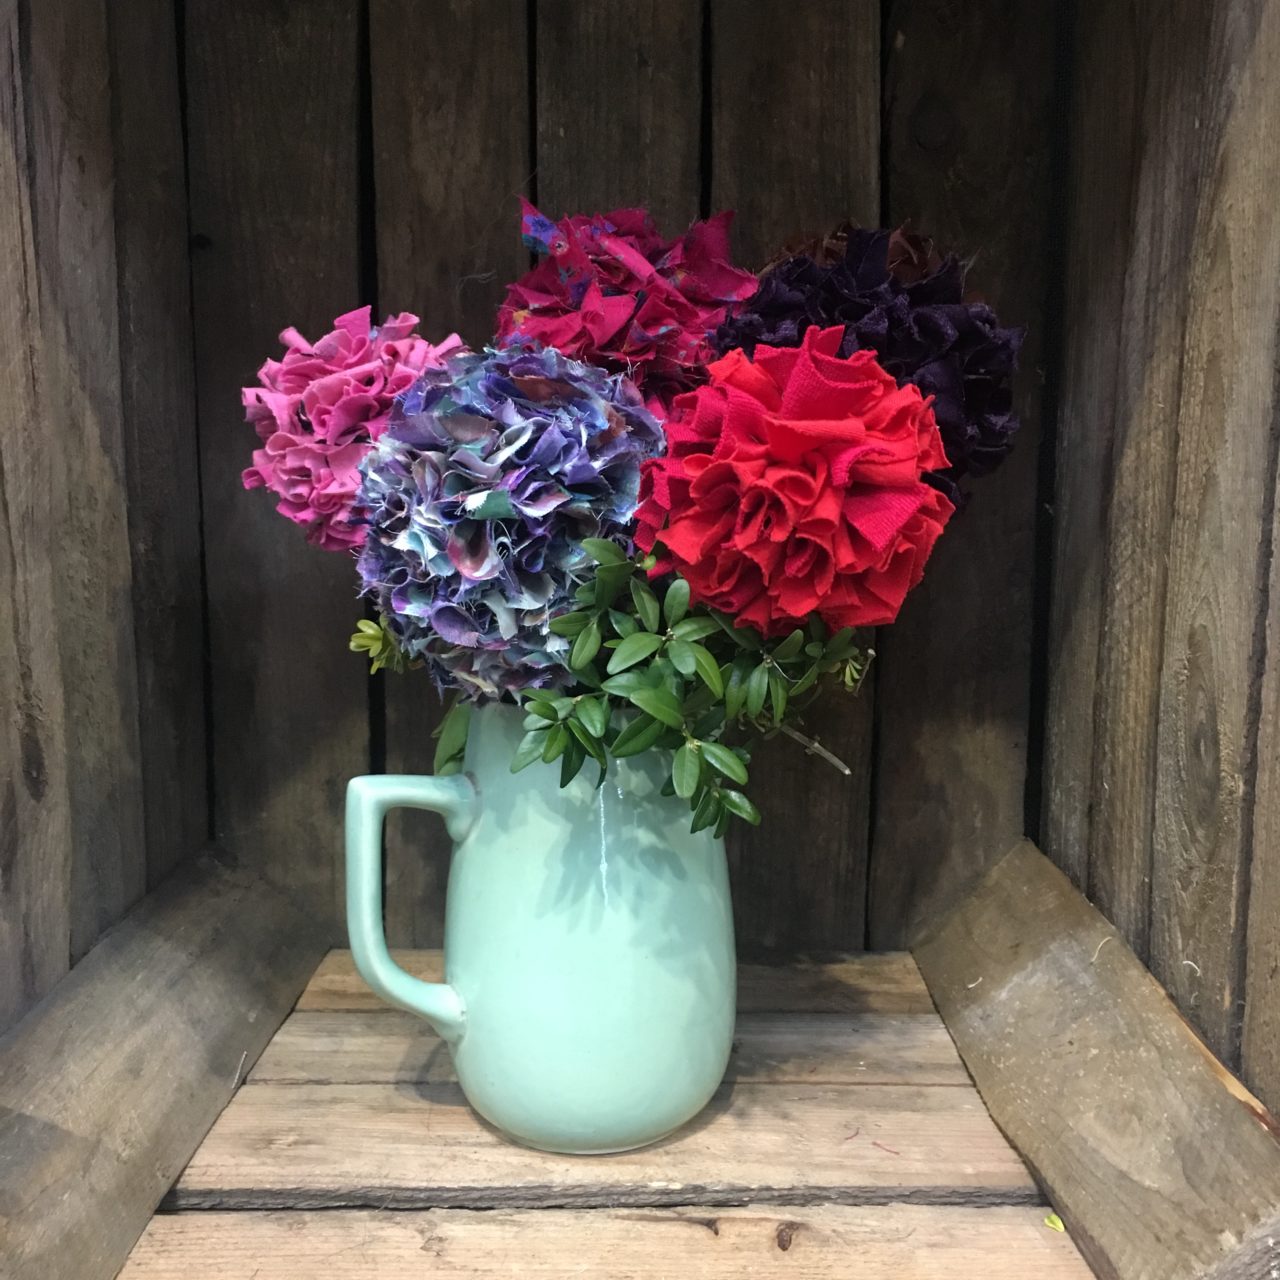 Rag Rug Bunch of Flowers in a jug on display